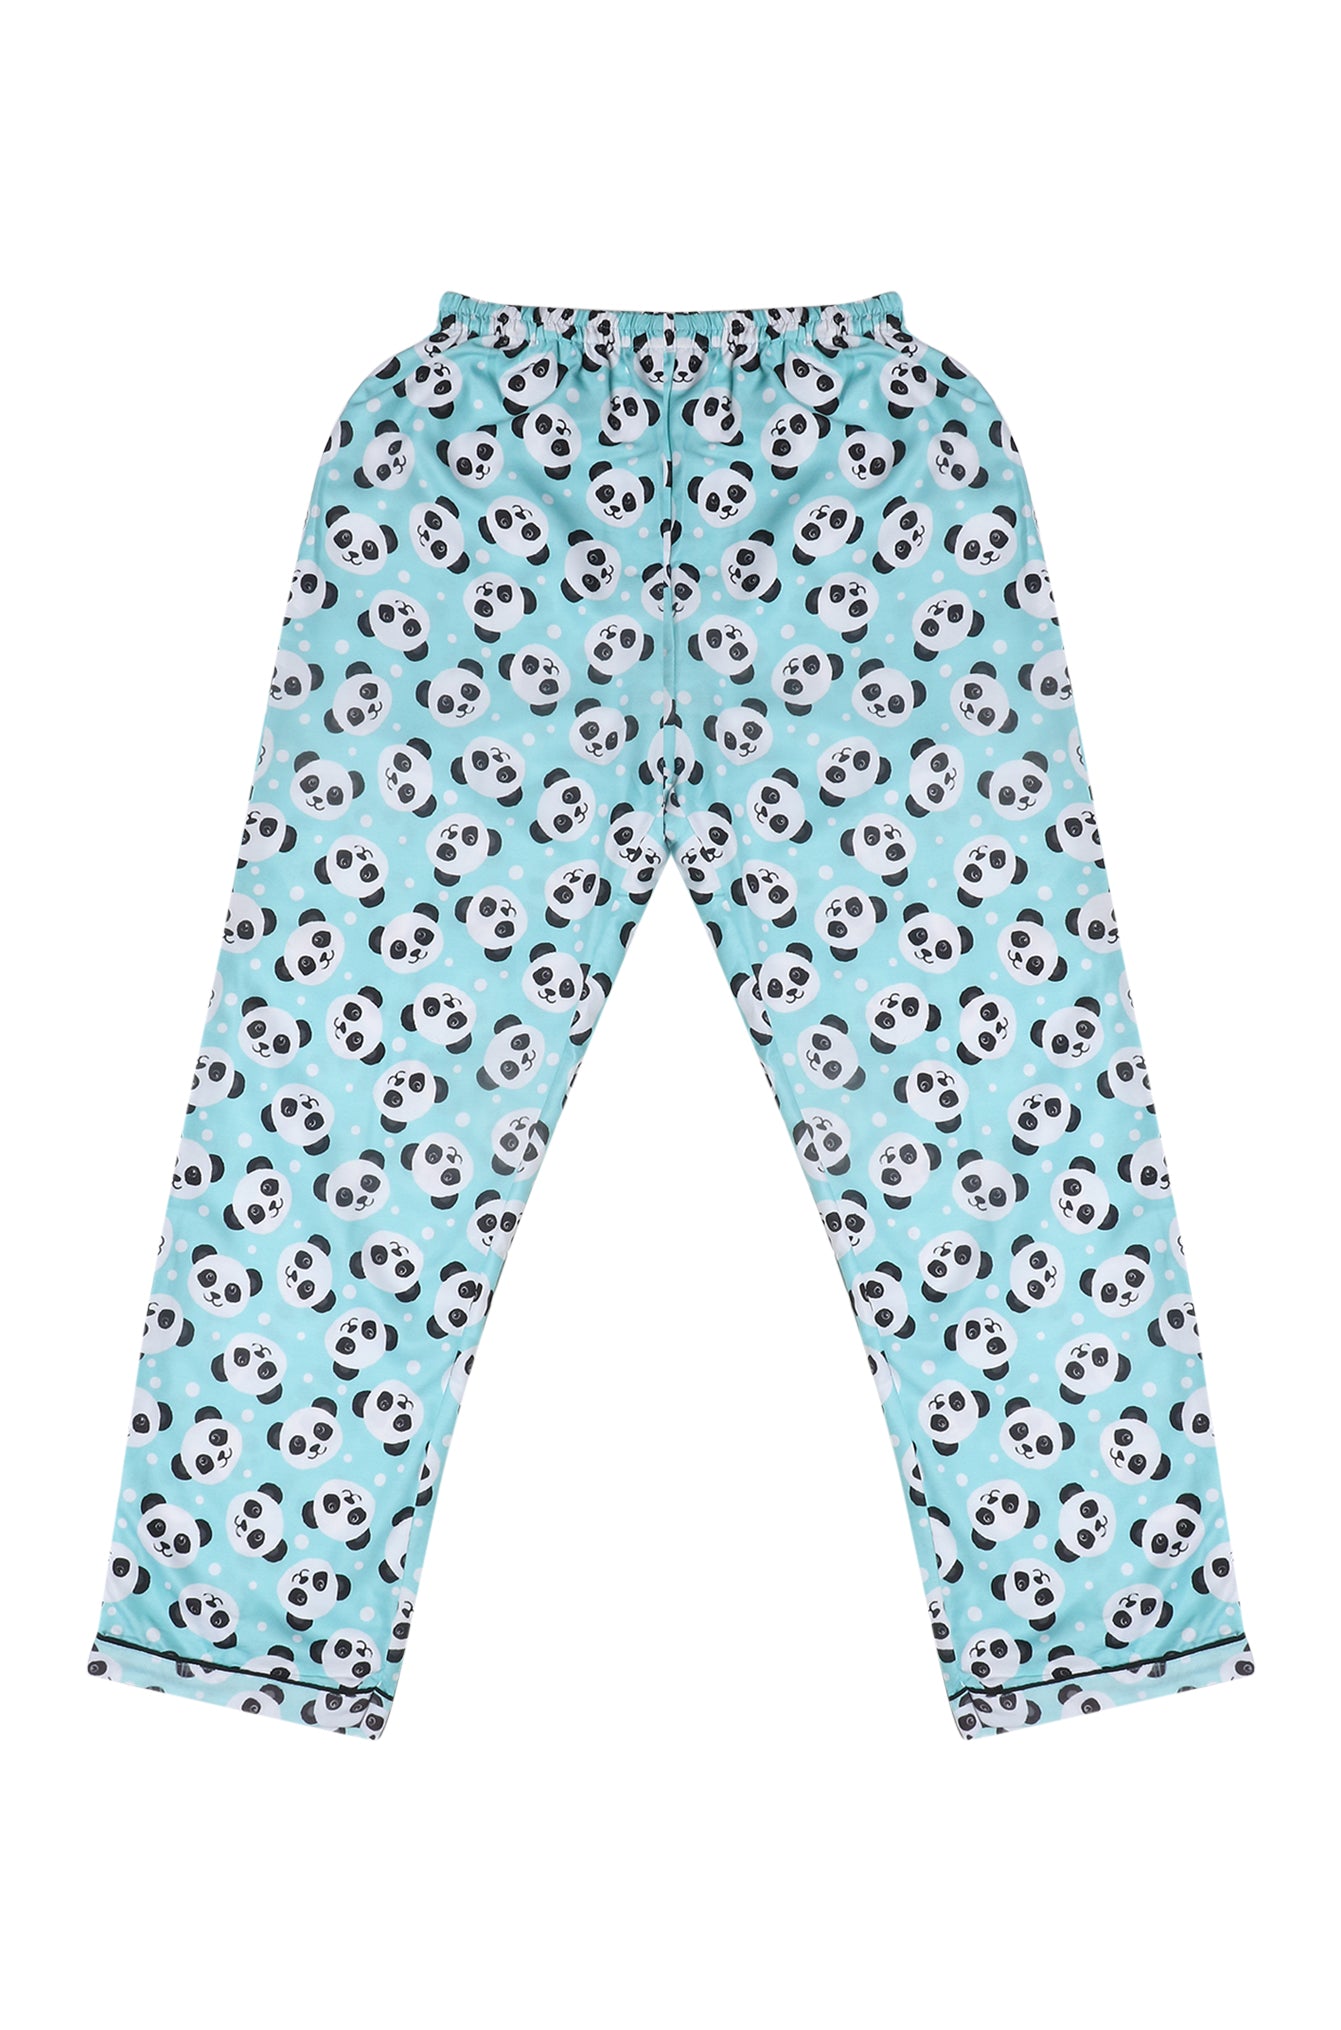 Single Pyjama (AO) [Buy 1 Get 1 Free]